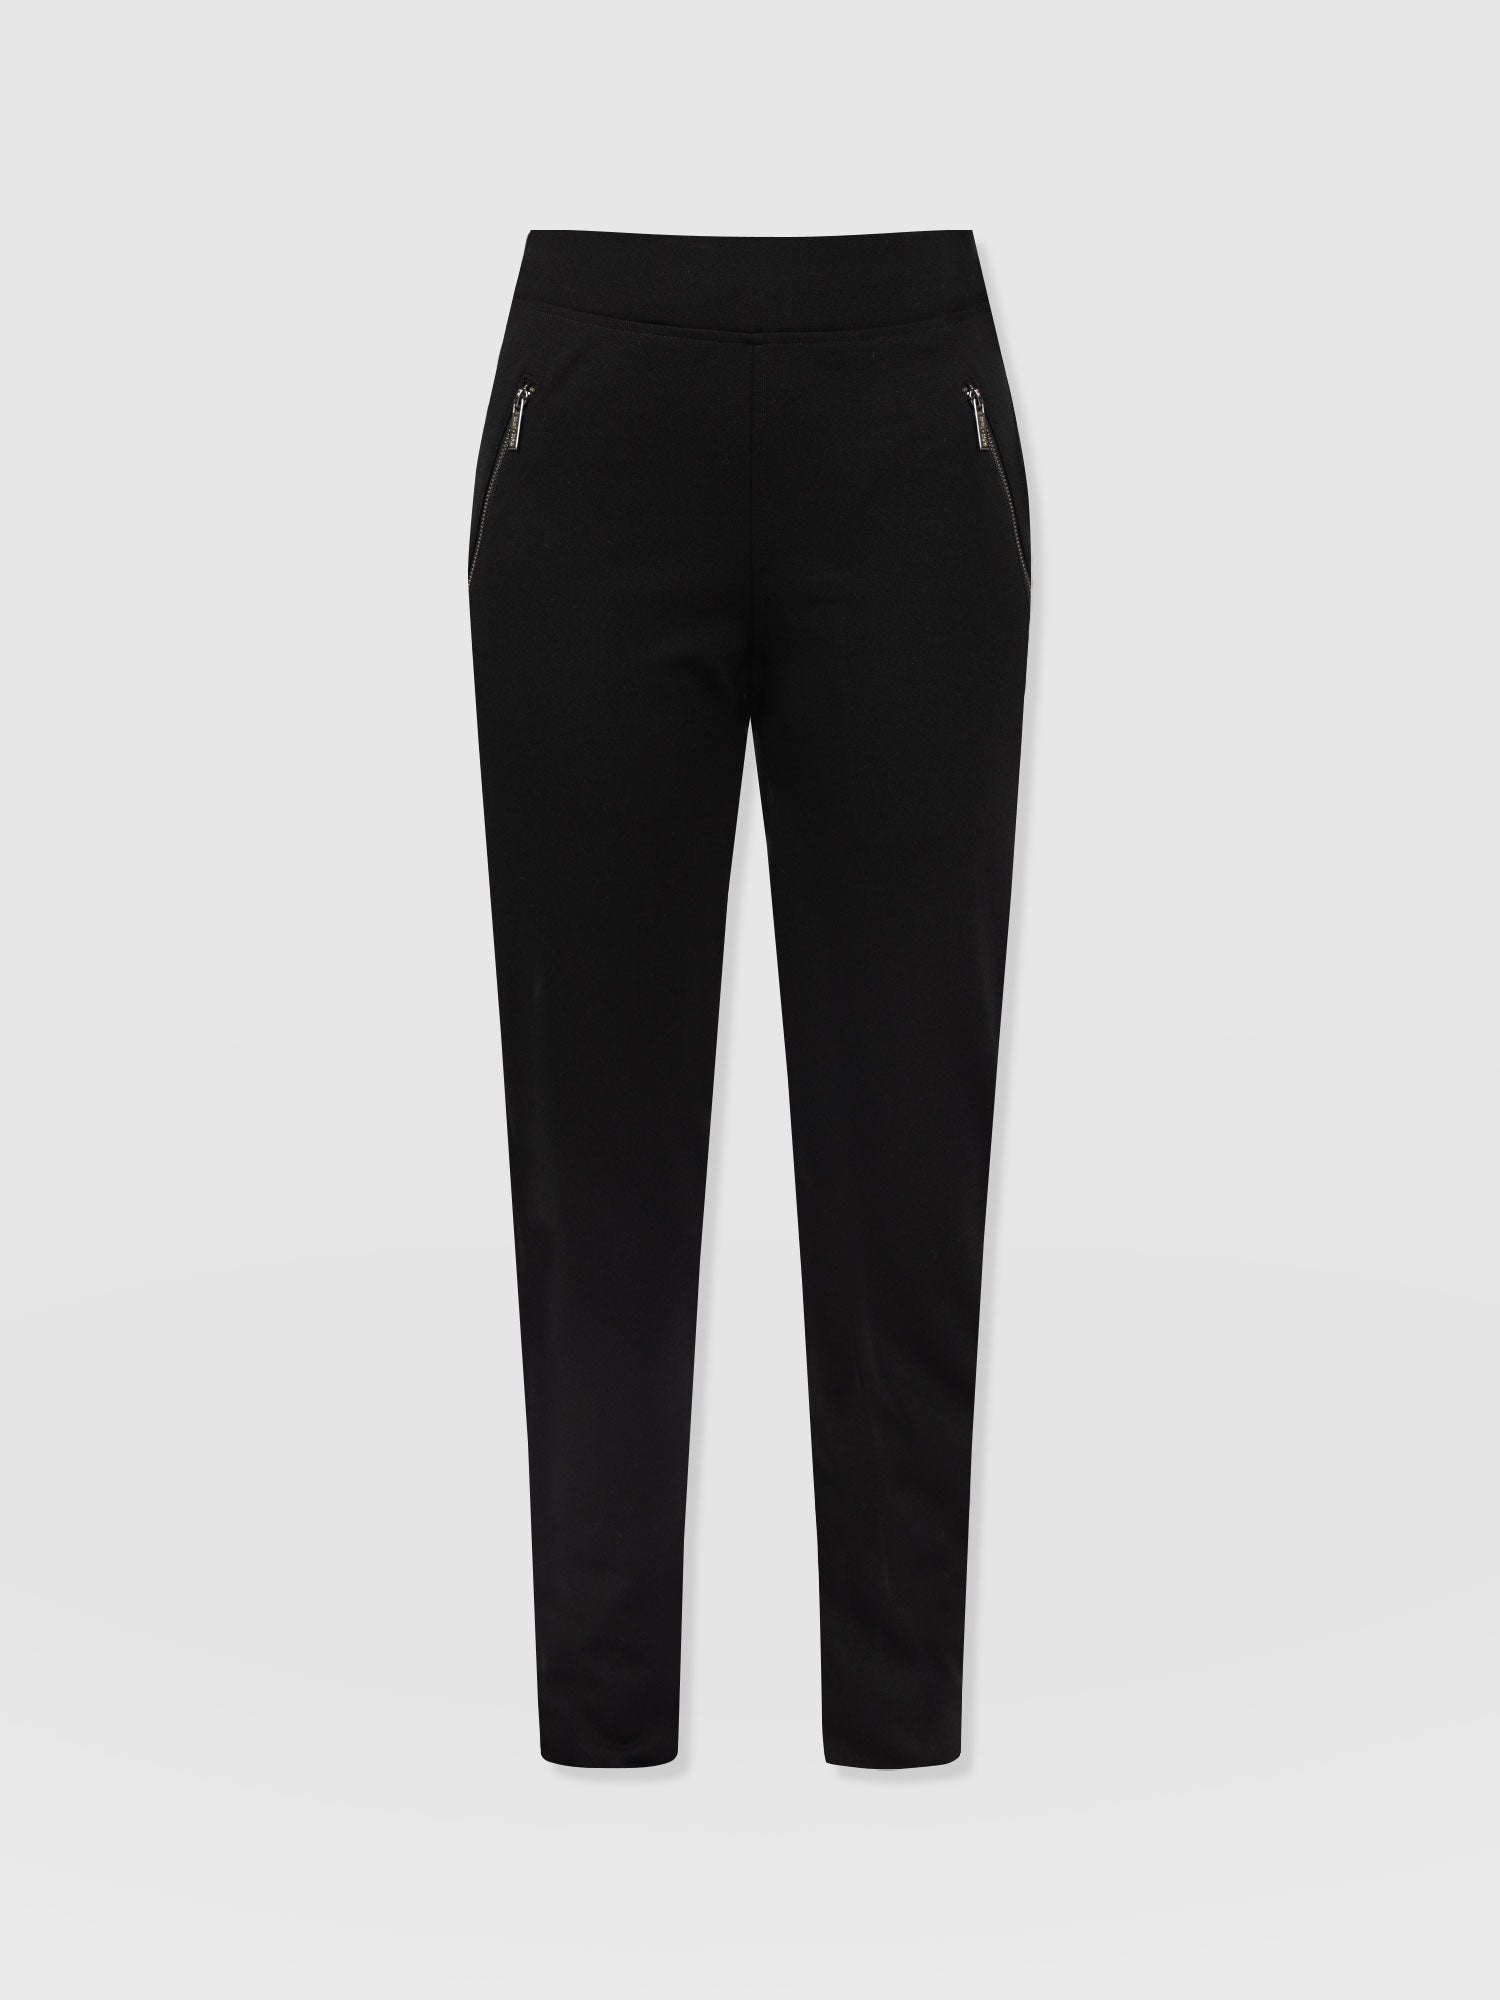 KELLO Women Grey Regular Straight Fit Trousers Size EUR 44 UK 18 W34 | eBay